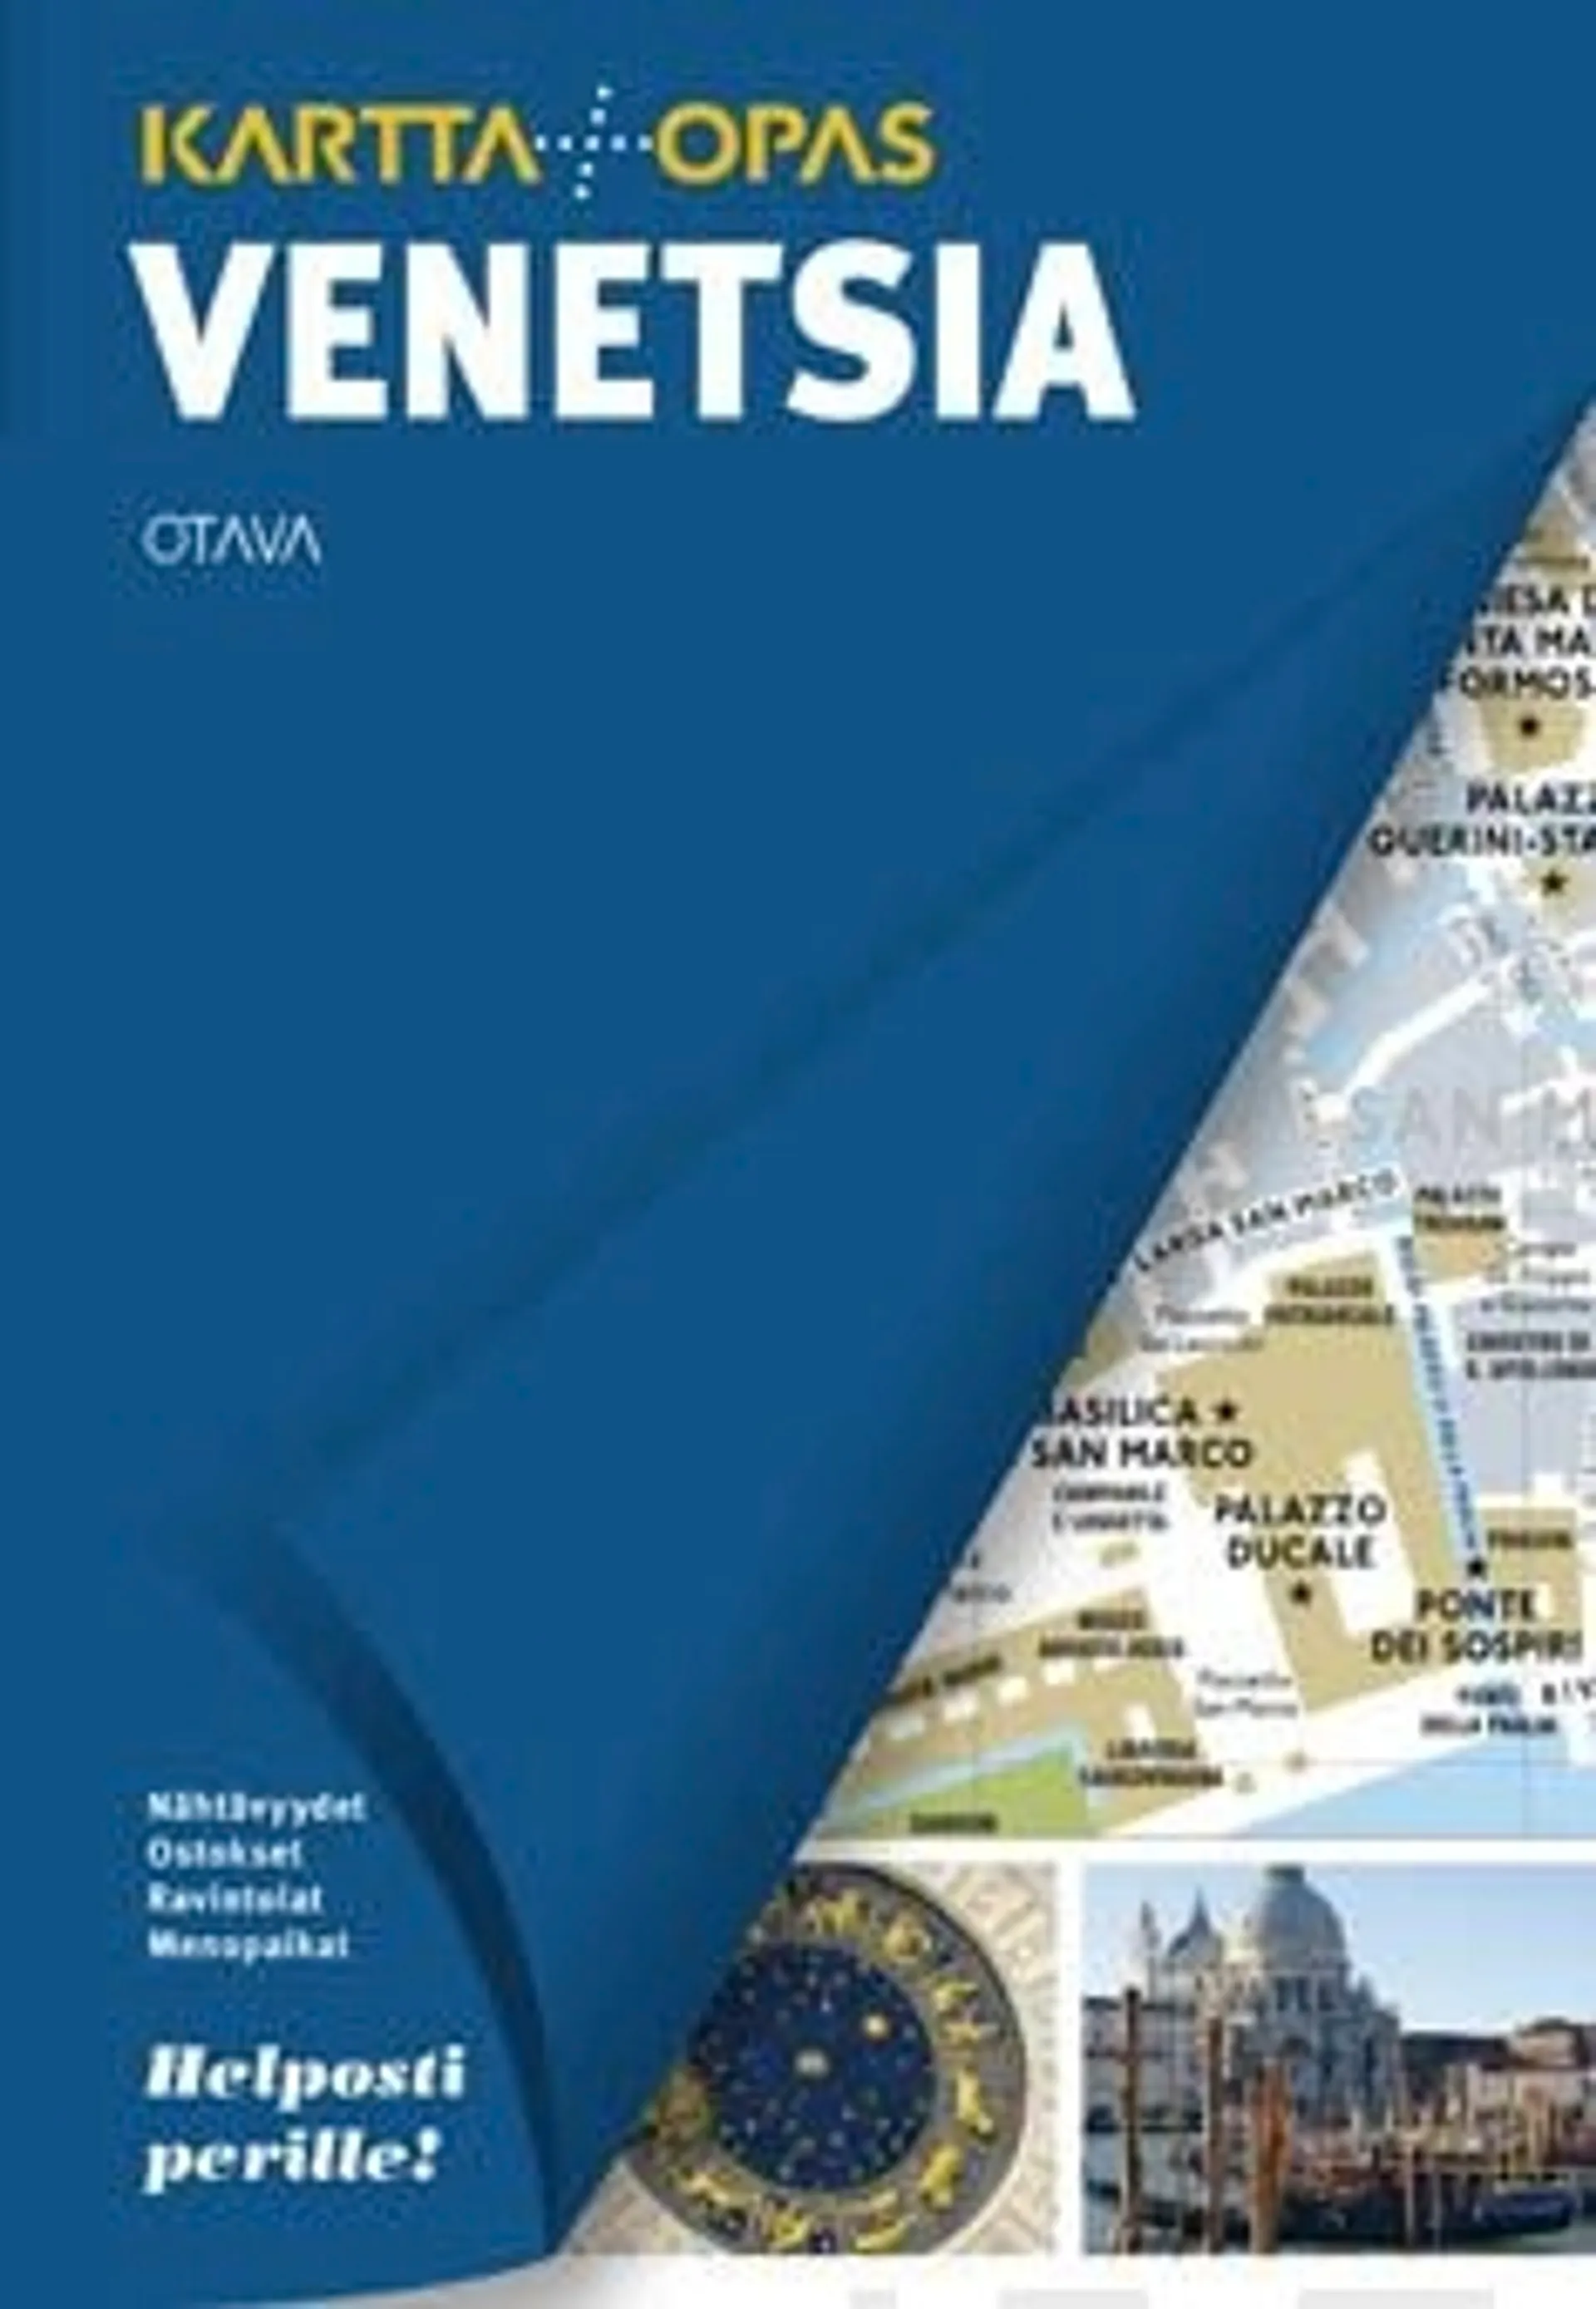 Vinon, Venetsia - kartta + opas